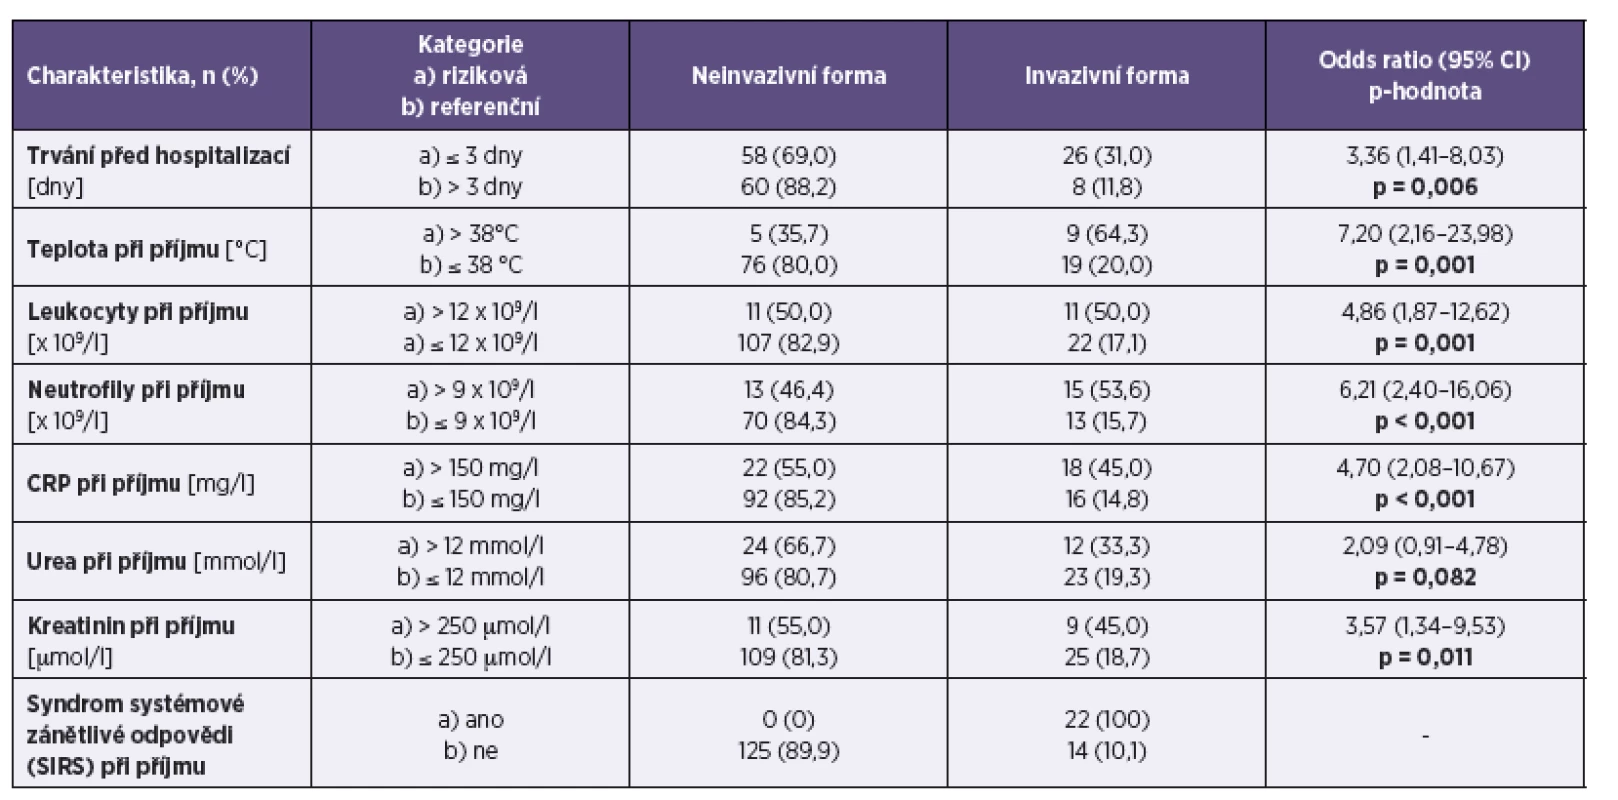 Porovnání charakteristik na počátku hospitalizace – kategoriální
Table 4. Basic clinical and laboratory parameters at admission – categorically